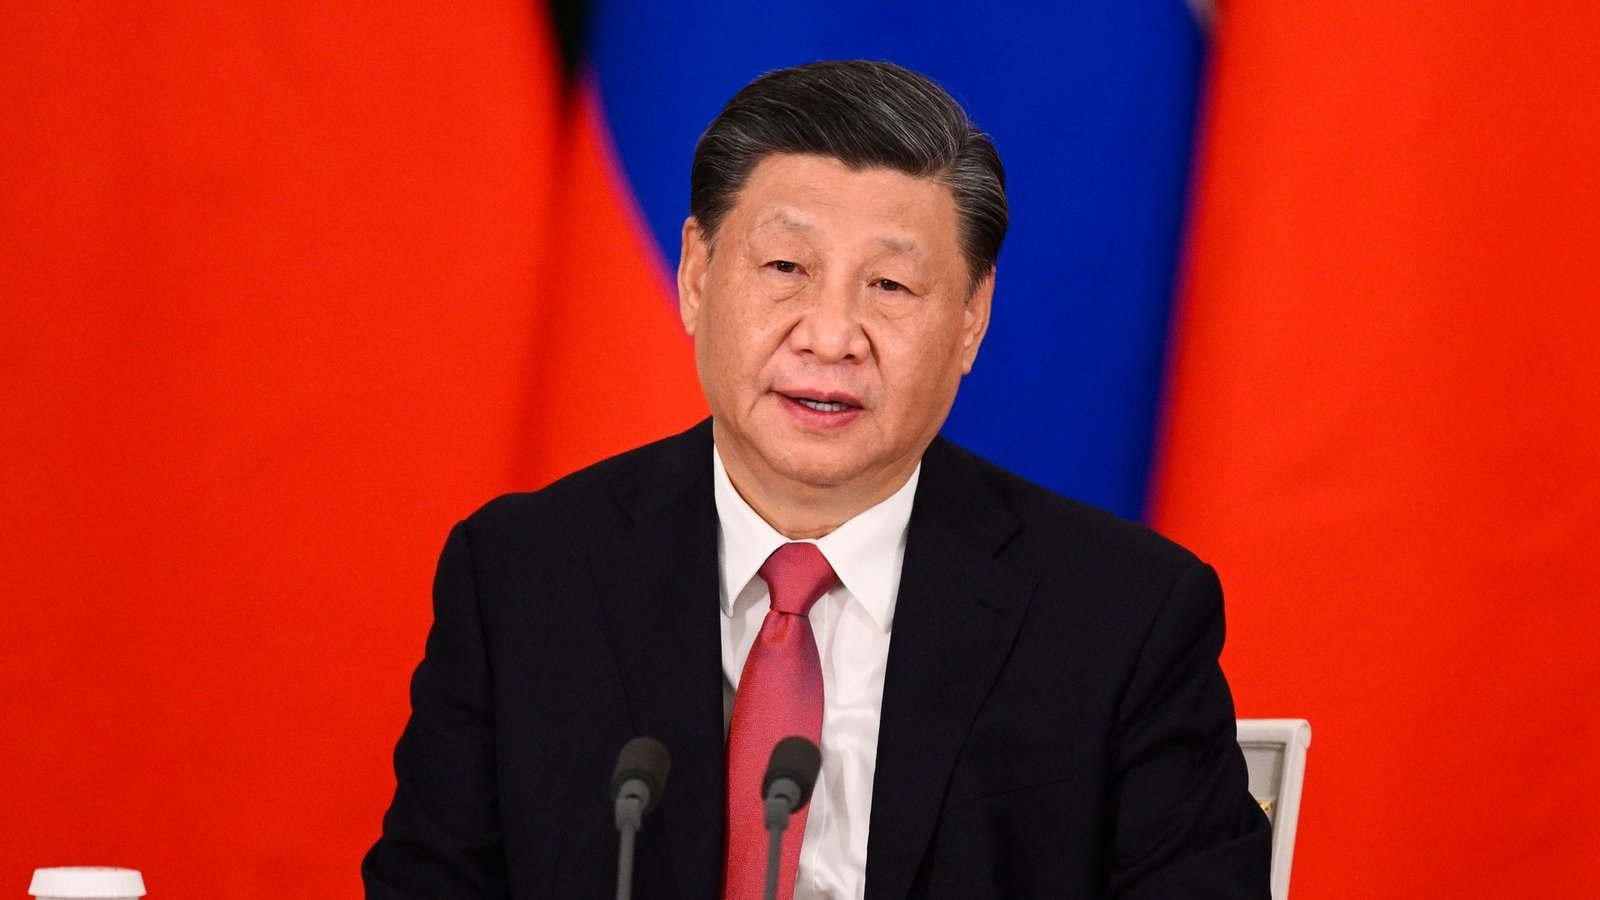 Chinas Präsident Xi Jinping hat an wirtschaftliche Beziehungen mit Honduras Forderungen geknüpft.Foto: Vladimir Astapkovich/Sputnik Kremlin Pool via AP/dpa